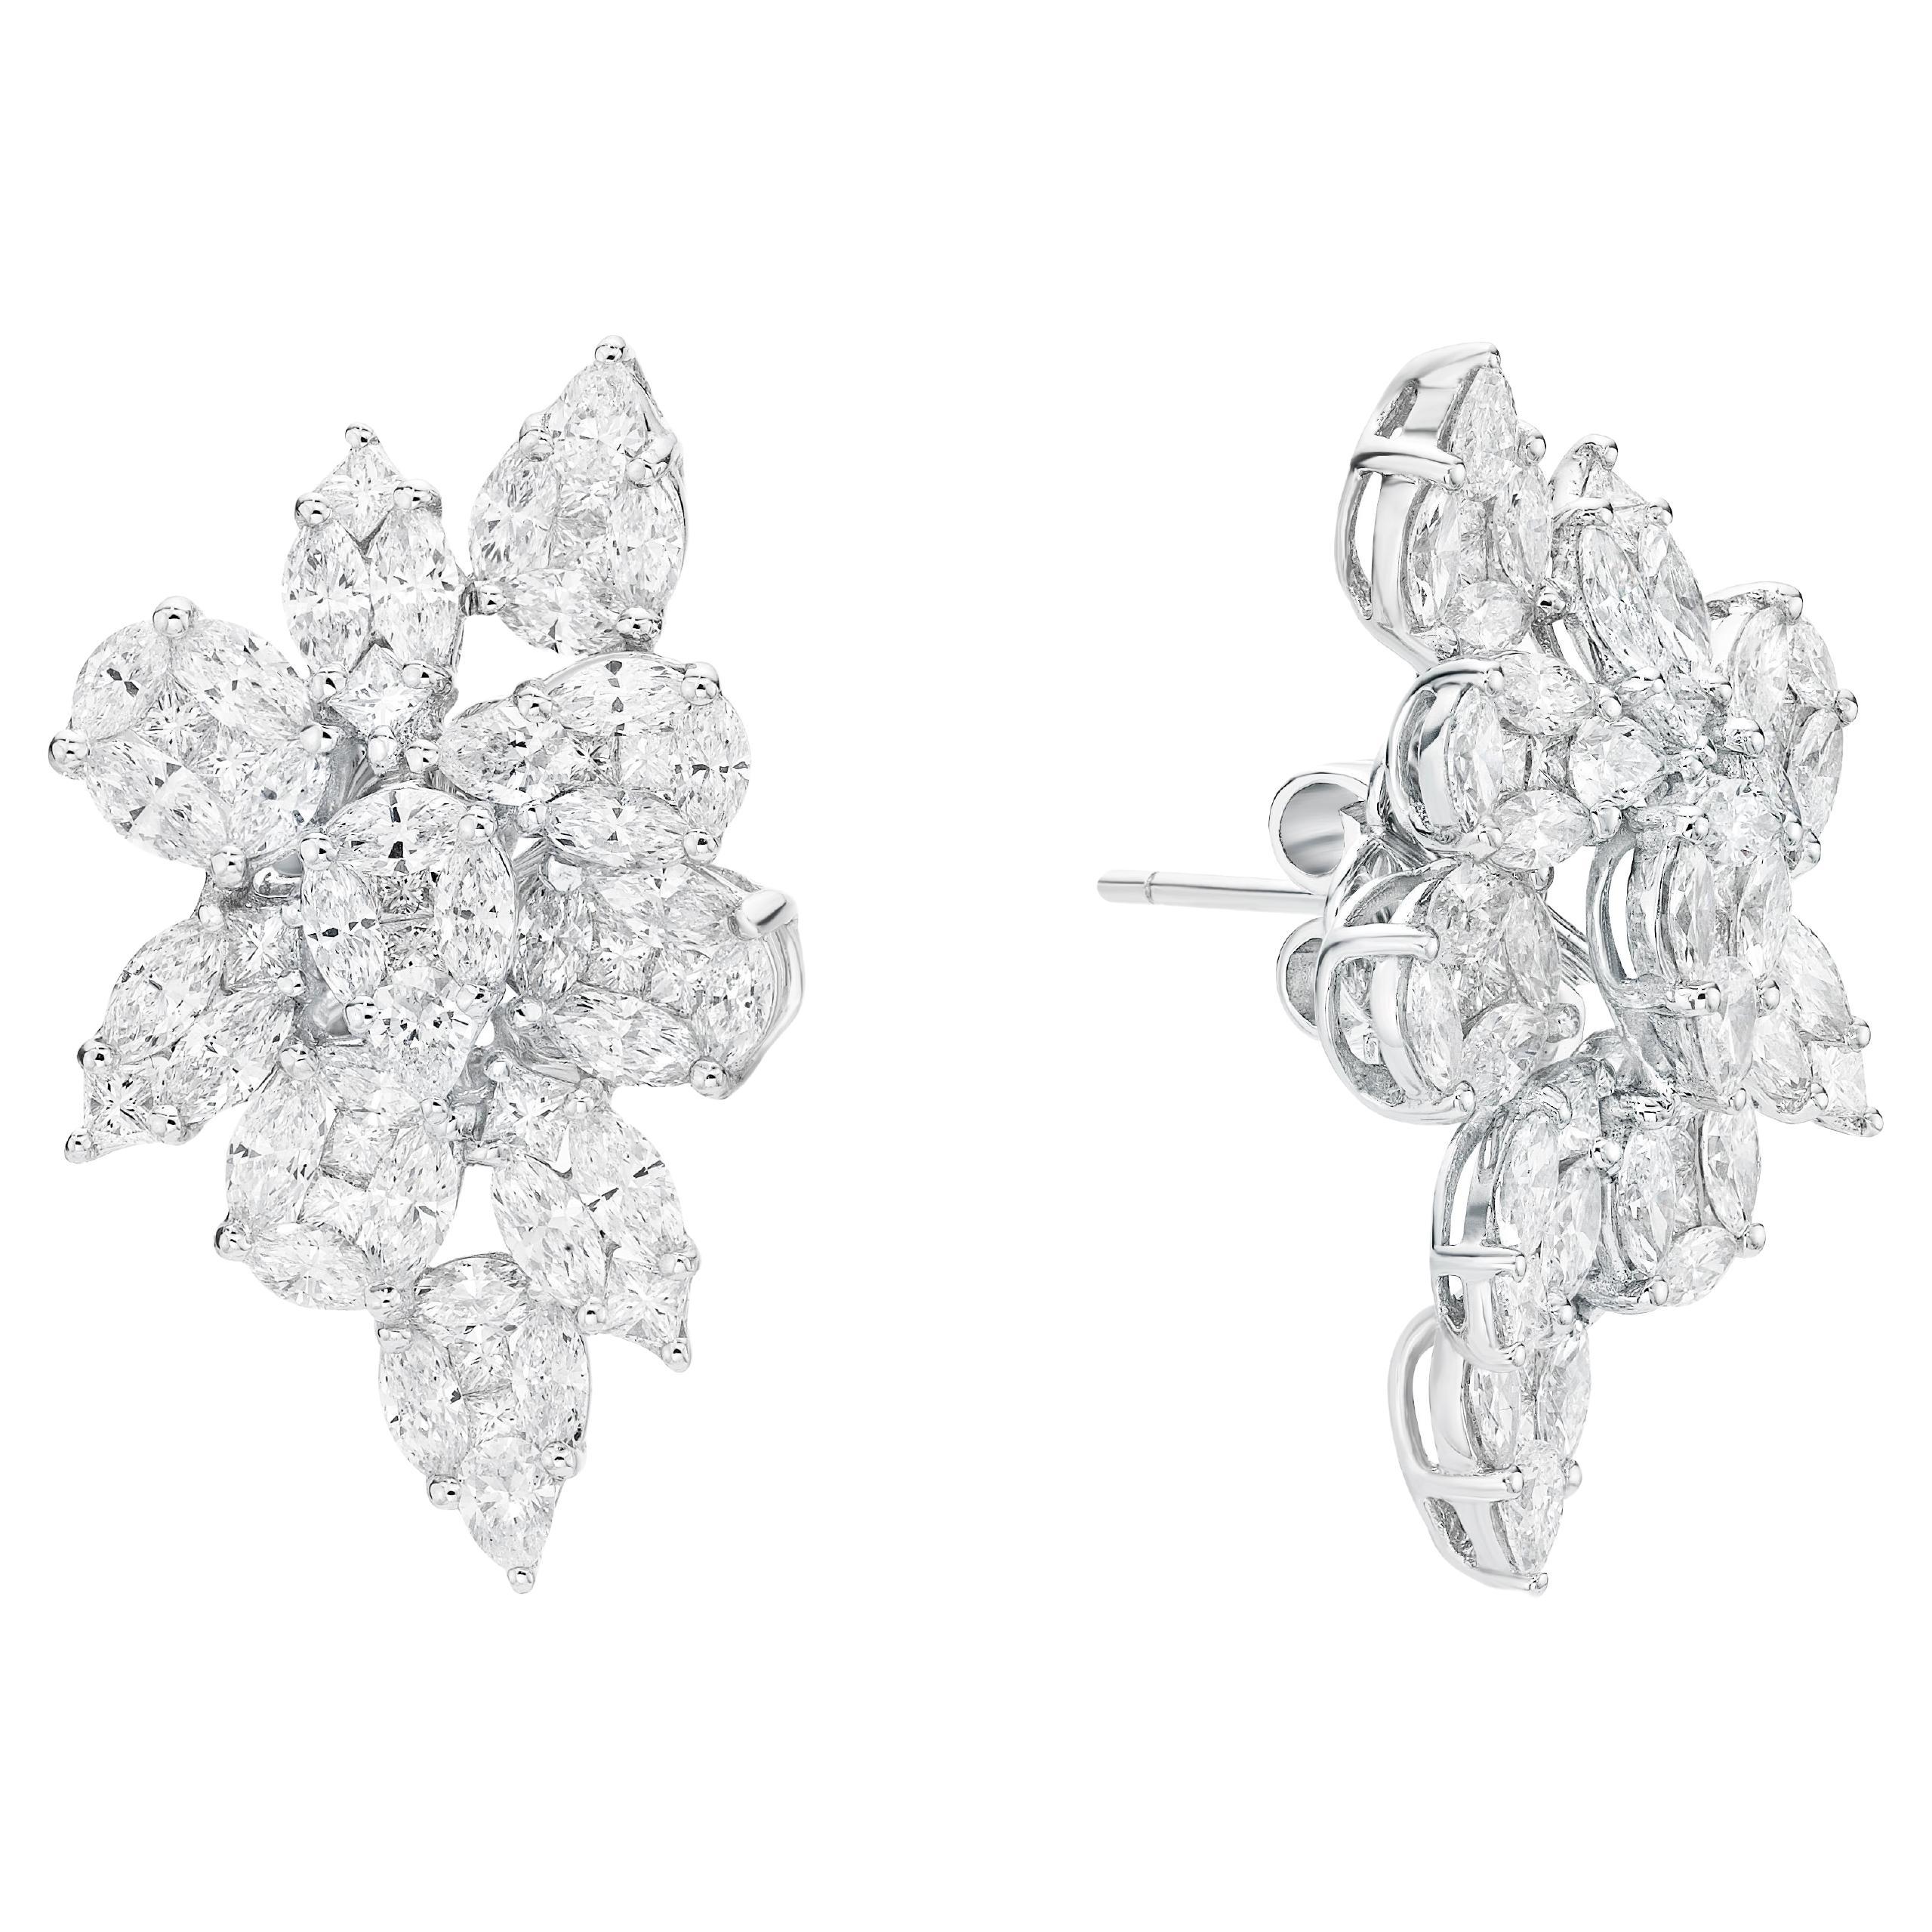 GILIN 18K White Gold Harry Winston Style Cluster Diamond Earring